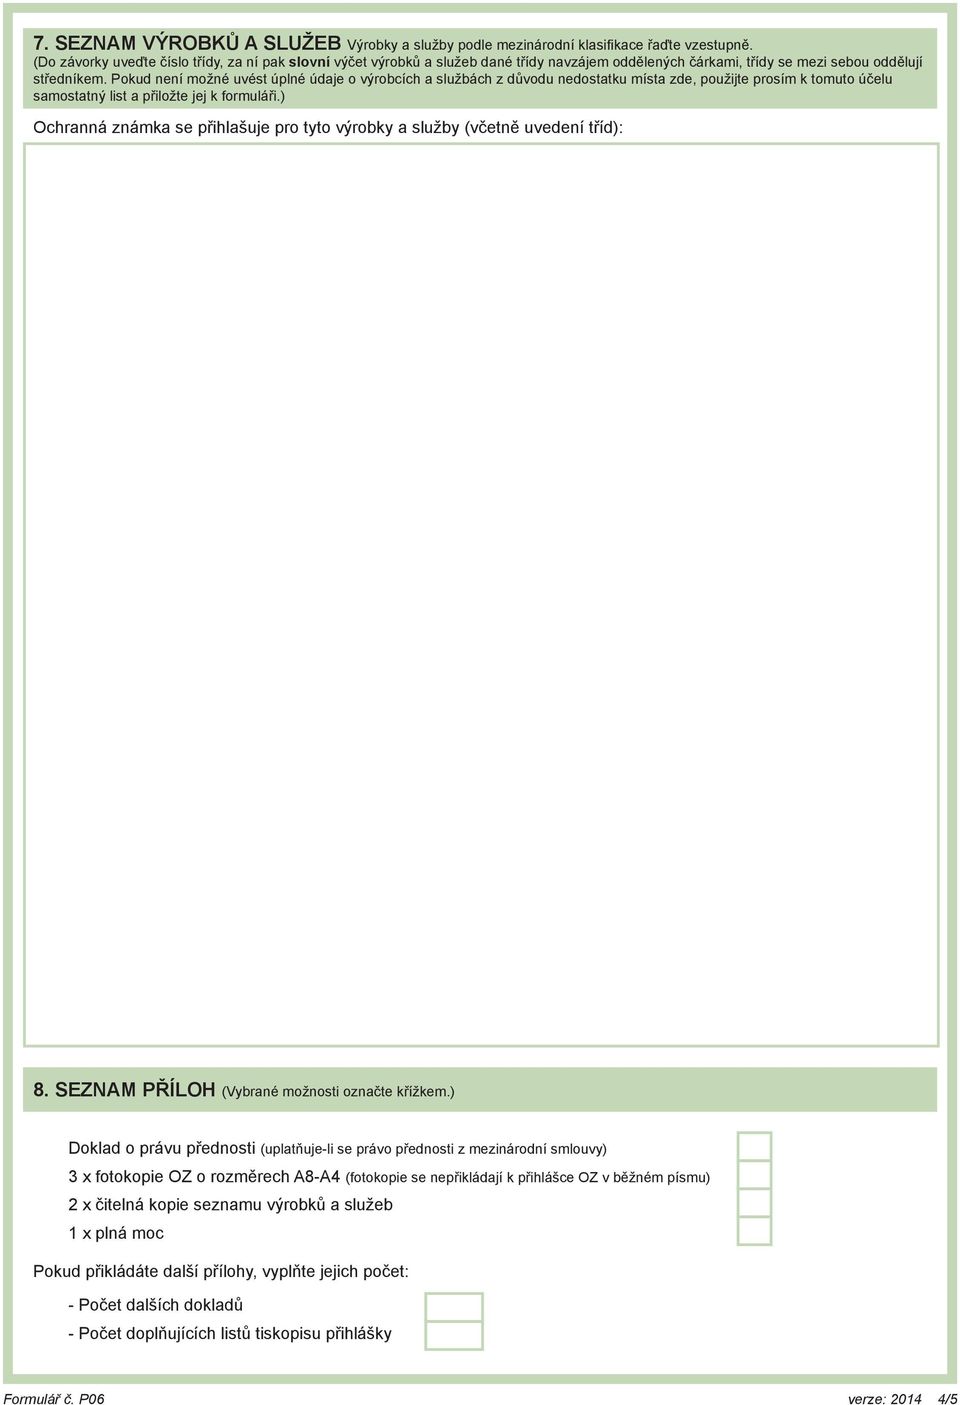 PŘIHLÁŠKA OCHRANNÉ ZNÁMKY se žádostí o zápis ochranné známky do rejstříku -  PDF Stažení zdarma